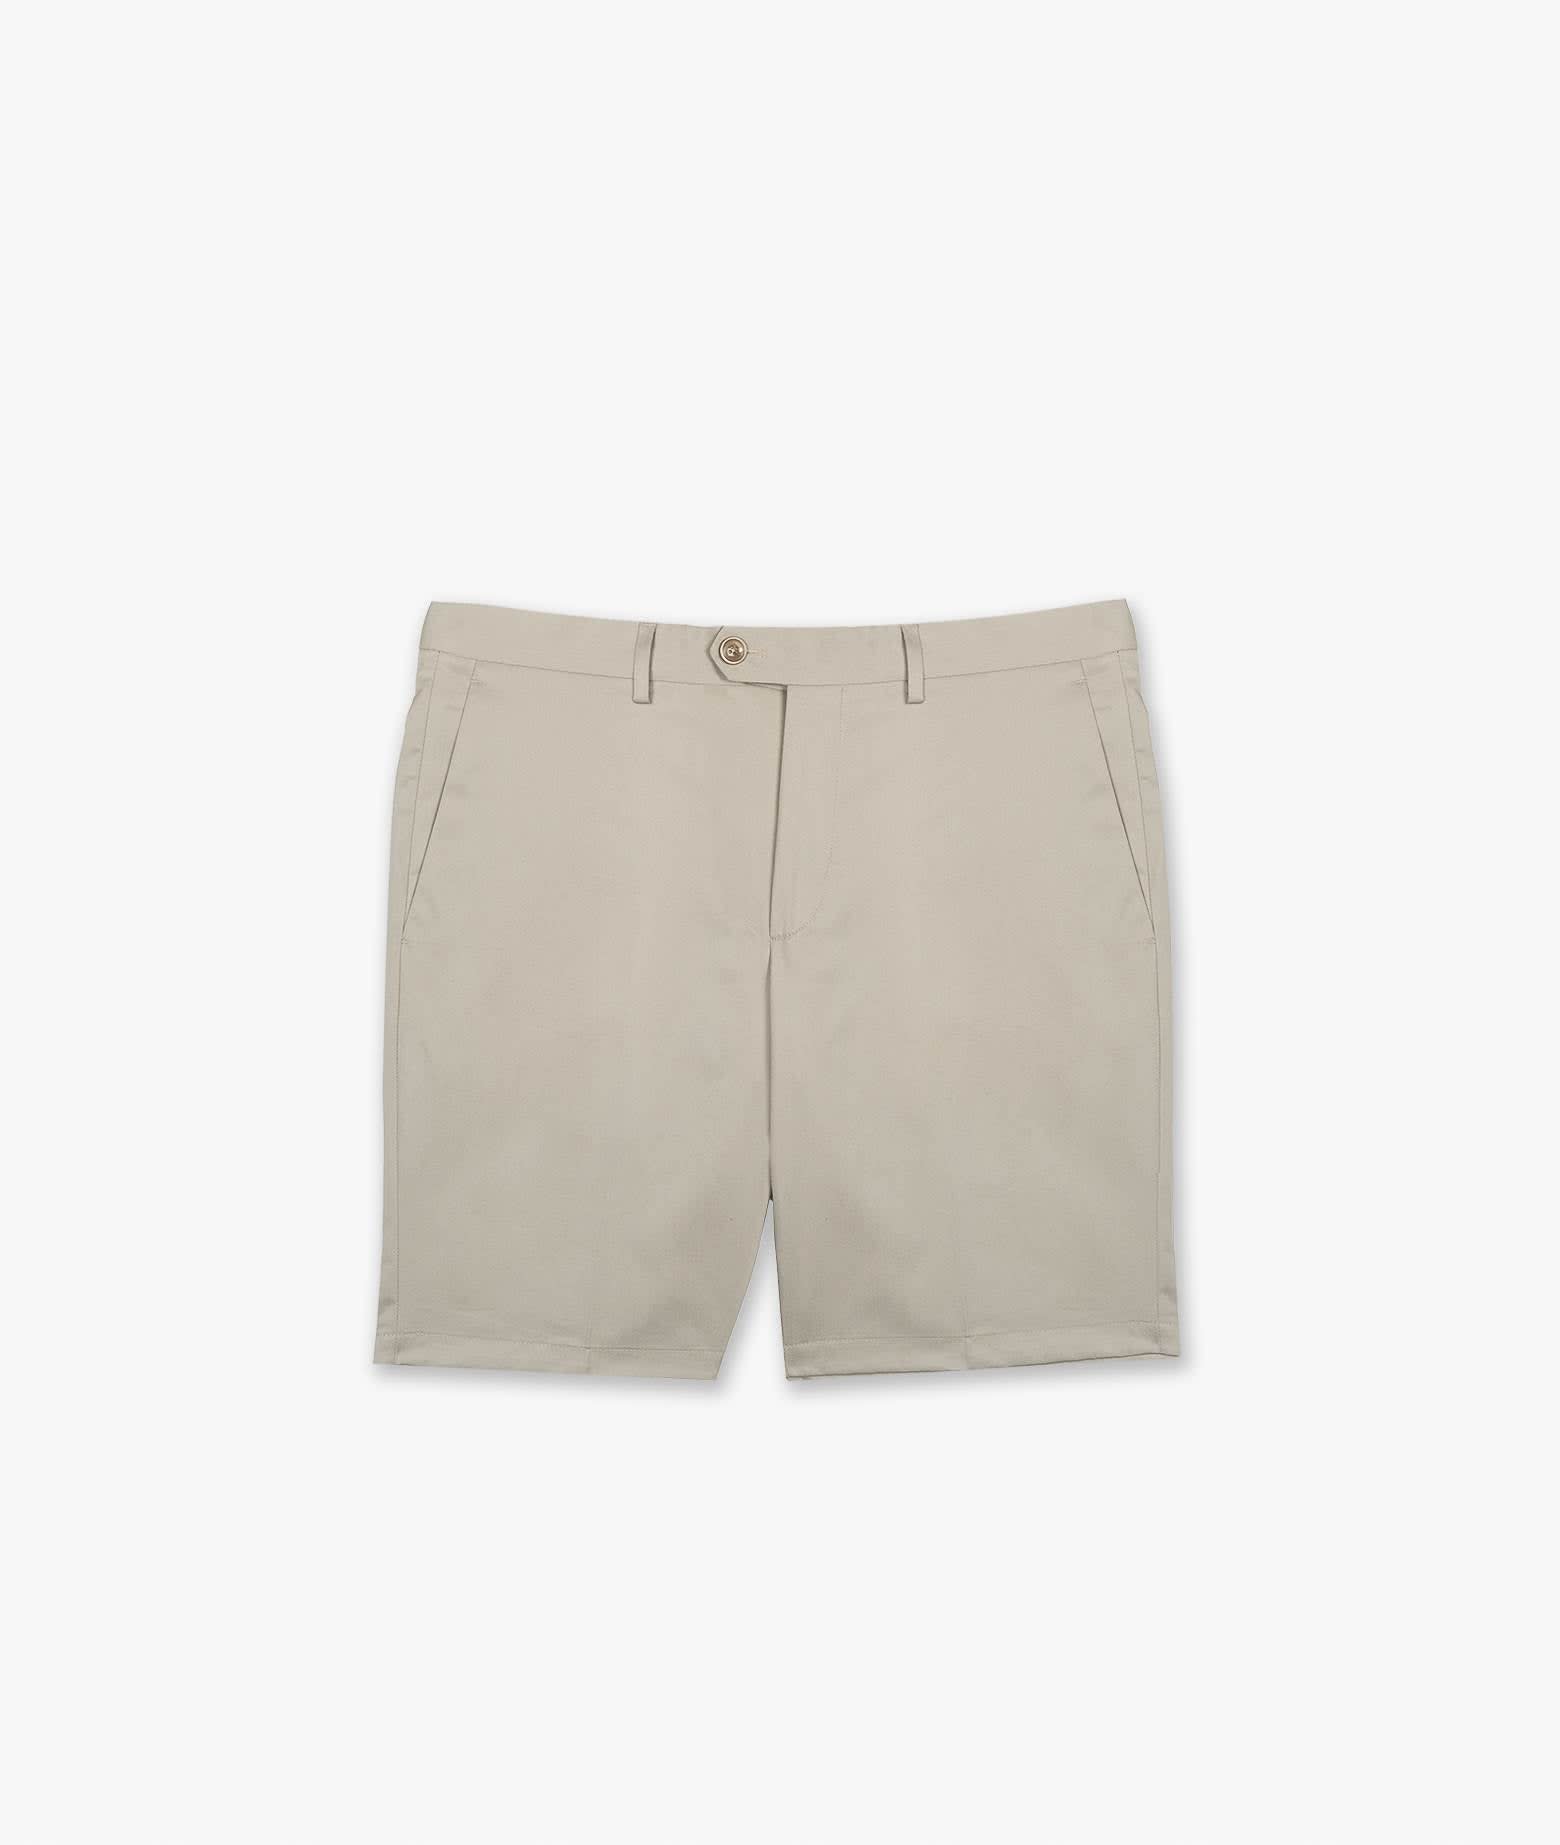 Bermuda Short poltu Quatu Shorts